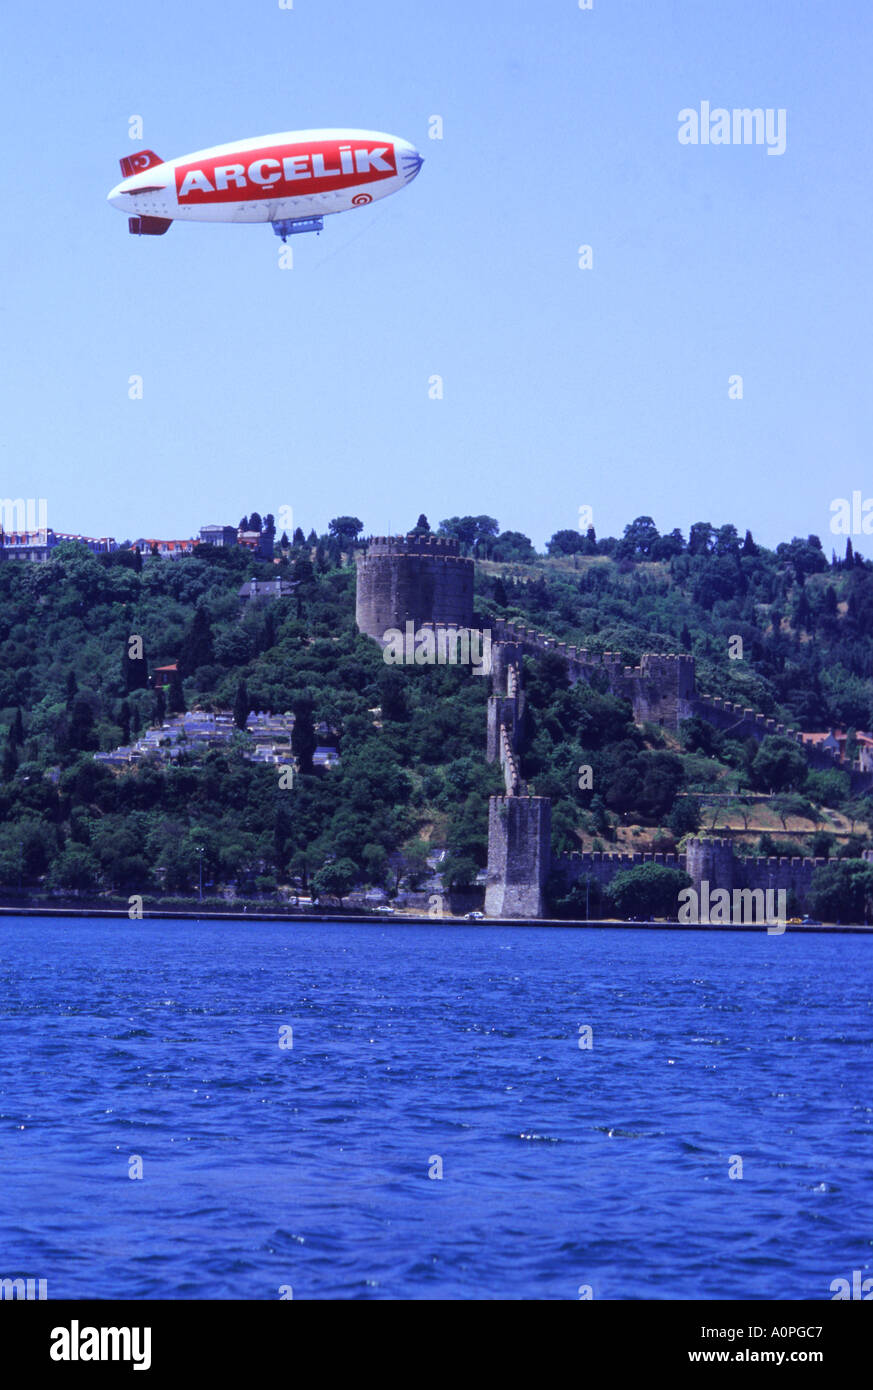 Arcelik Airship Cruises über den Bosporus Waterway mit Rumel Hisari Fort im Hintergrund Stockfoto